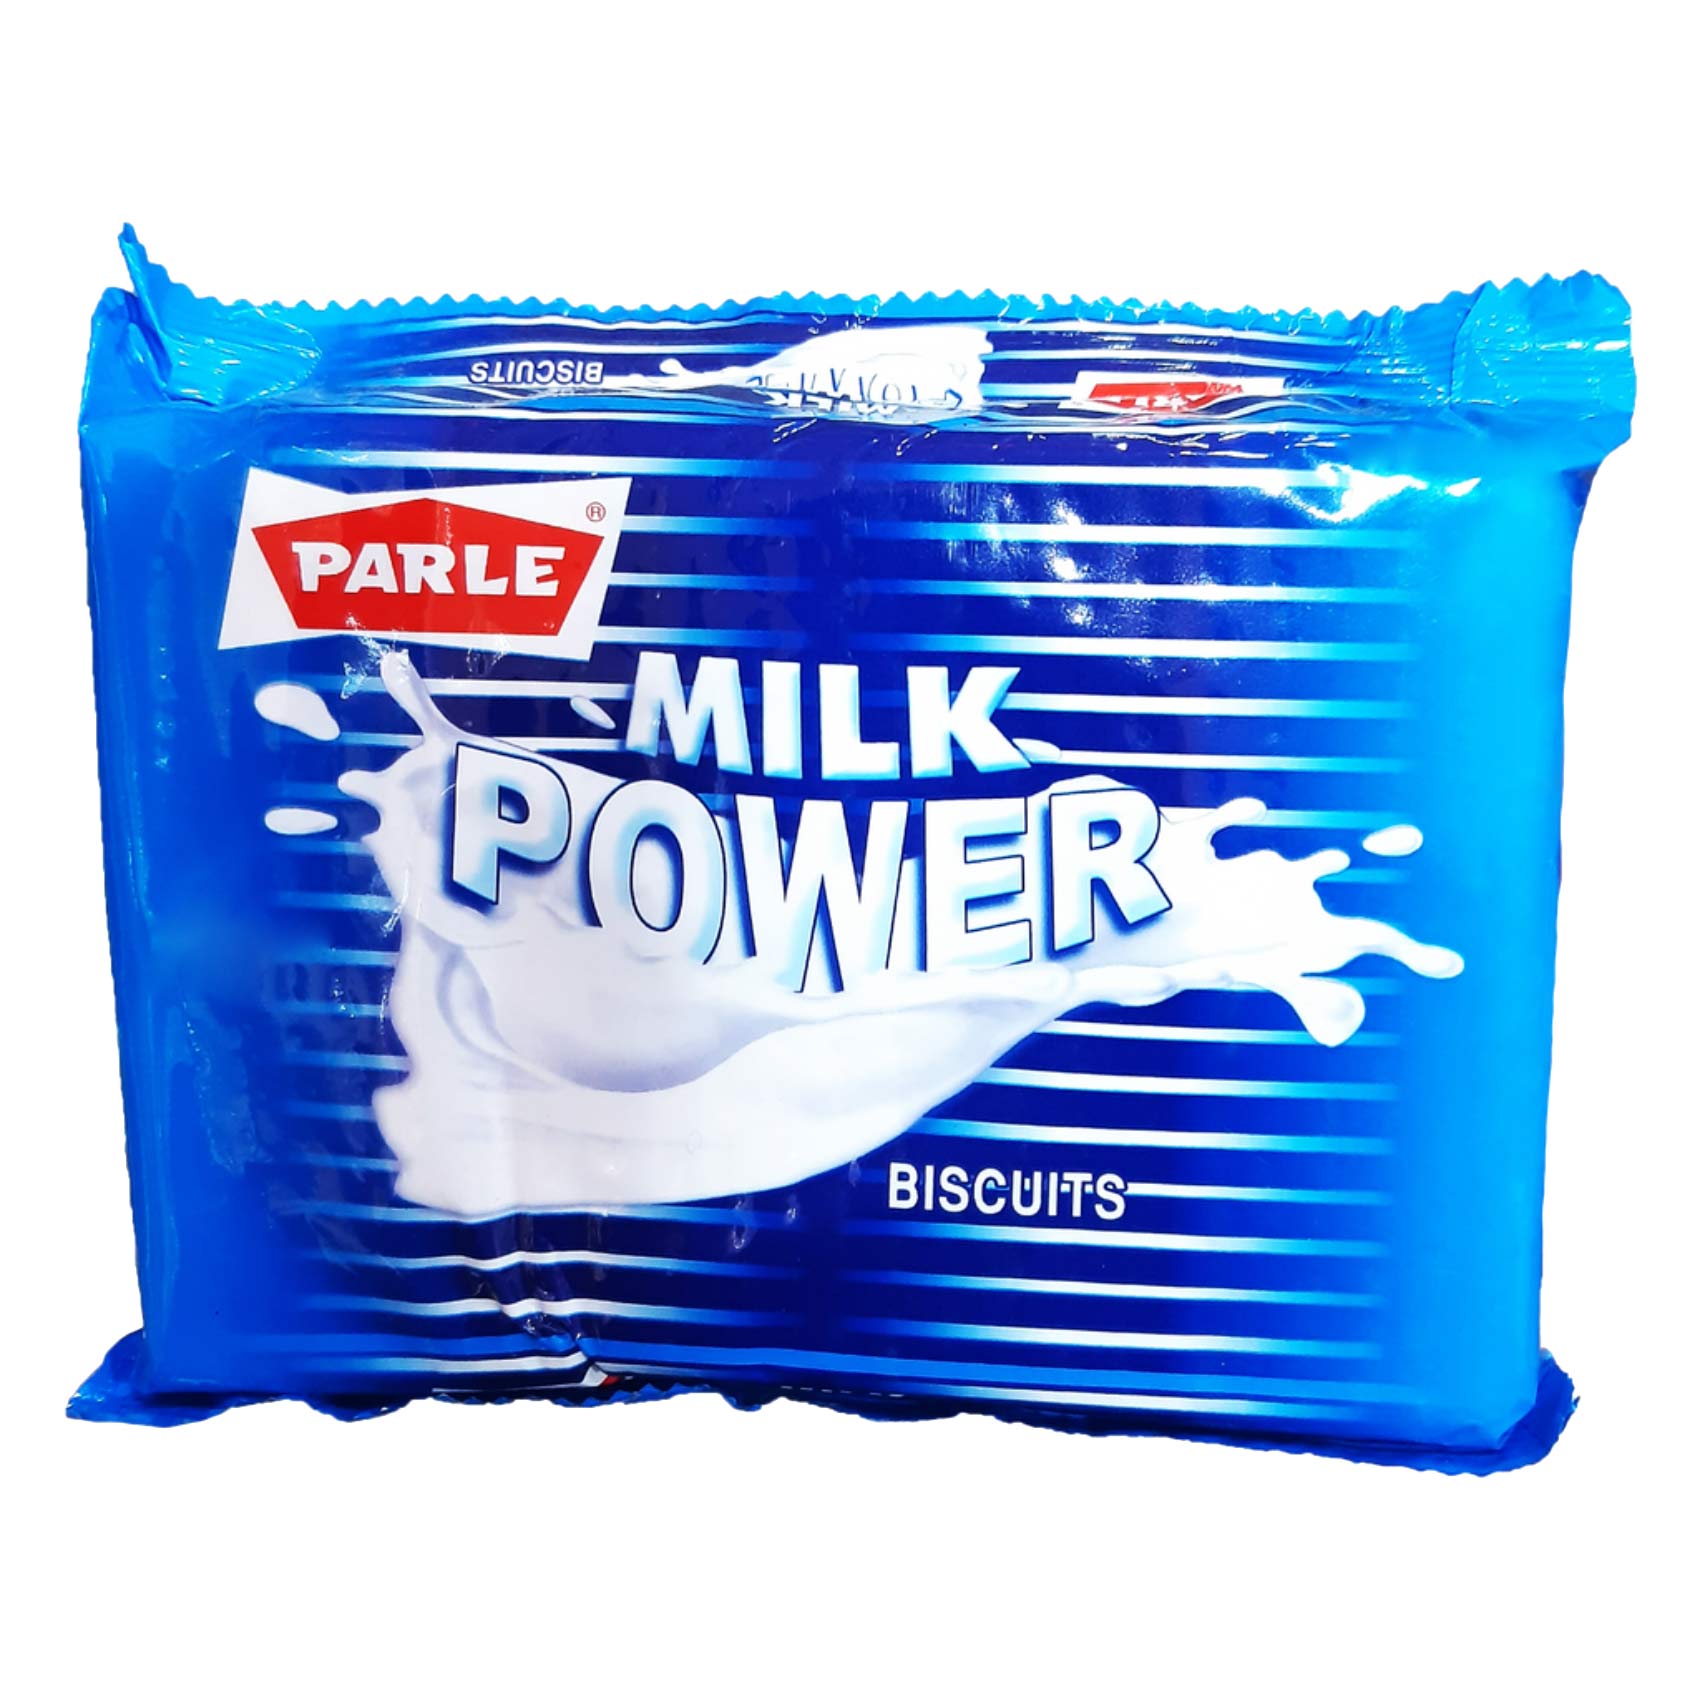 Parle Milk Power Biscuits 195. 5g